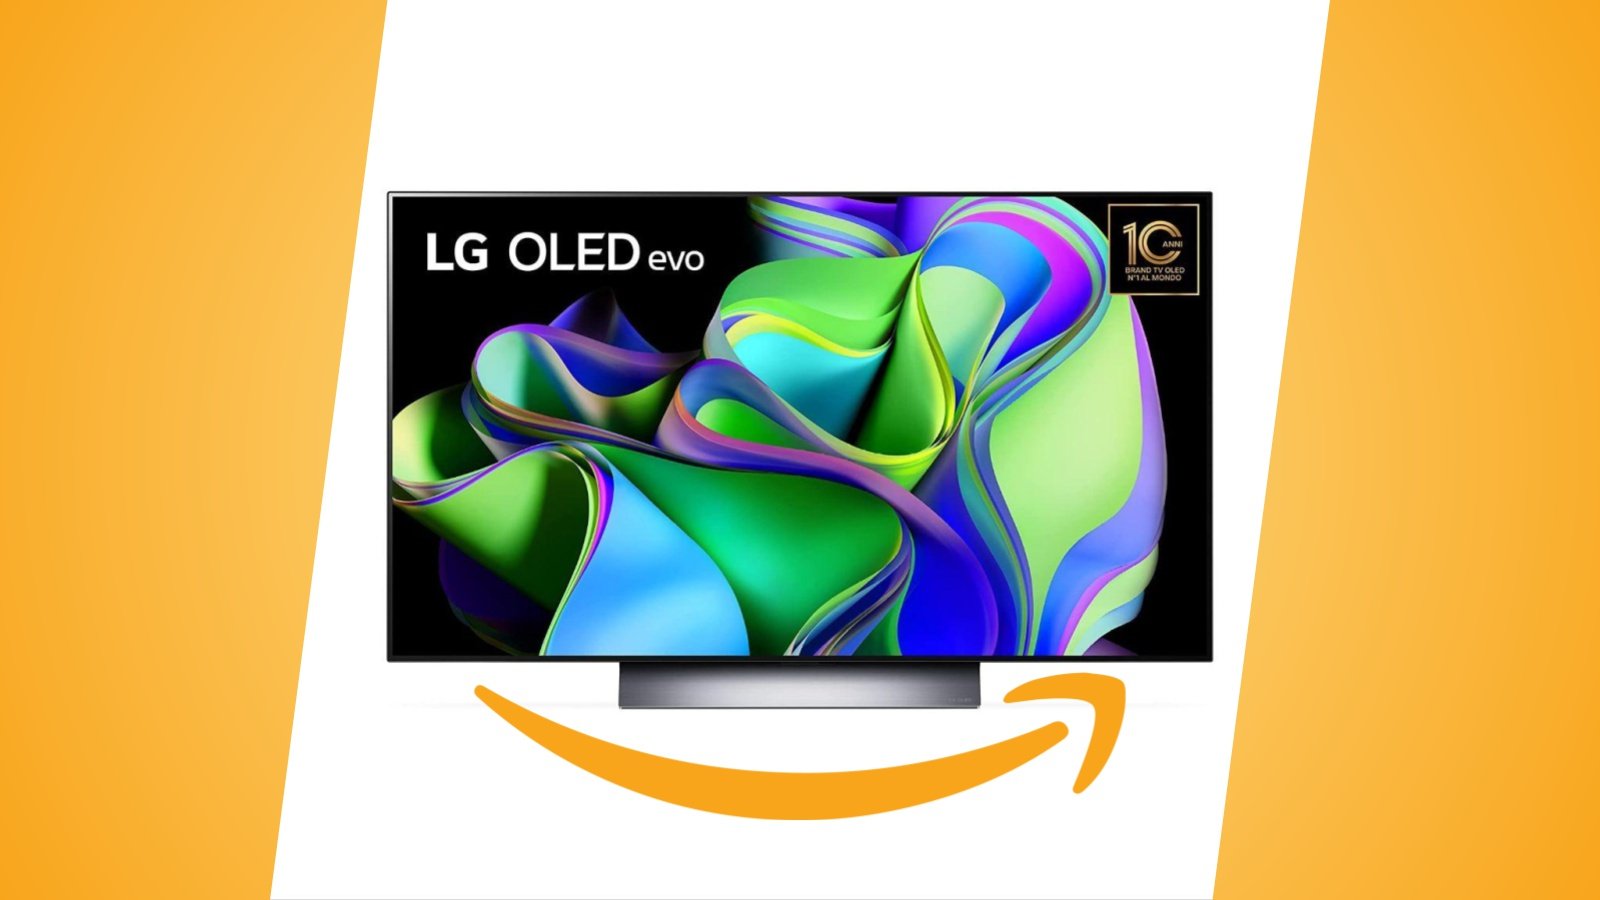 Offerte Amazon: smart TV LG OLED evo 48 pollici in 4K con HDMI 2.1 in sconto al prezzo minimo